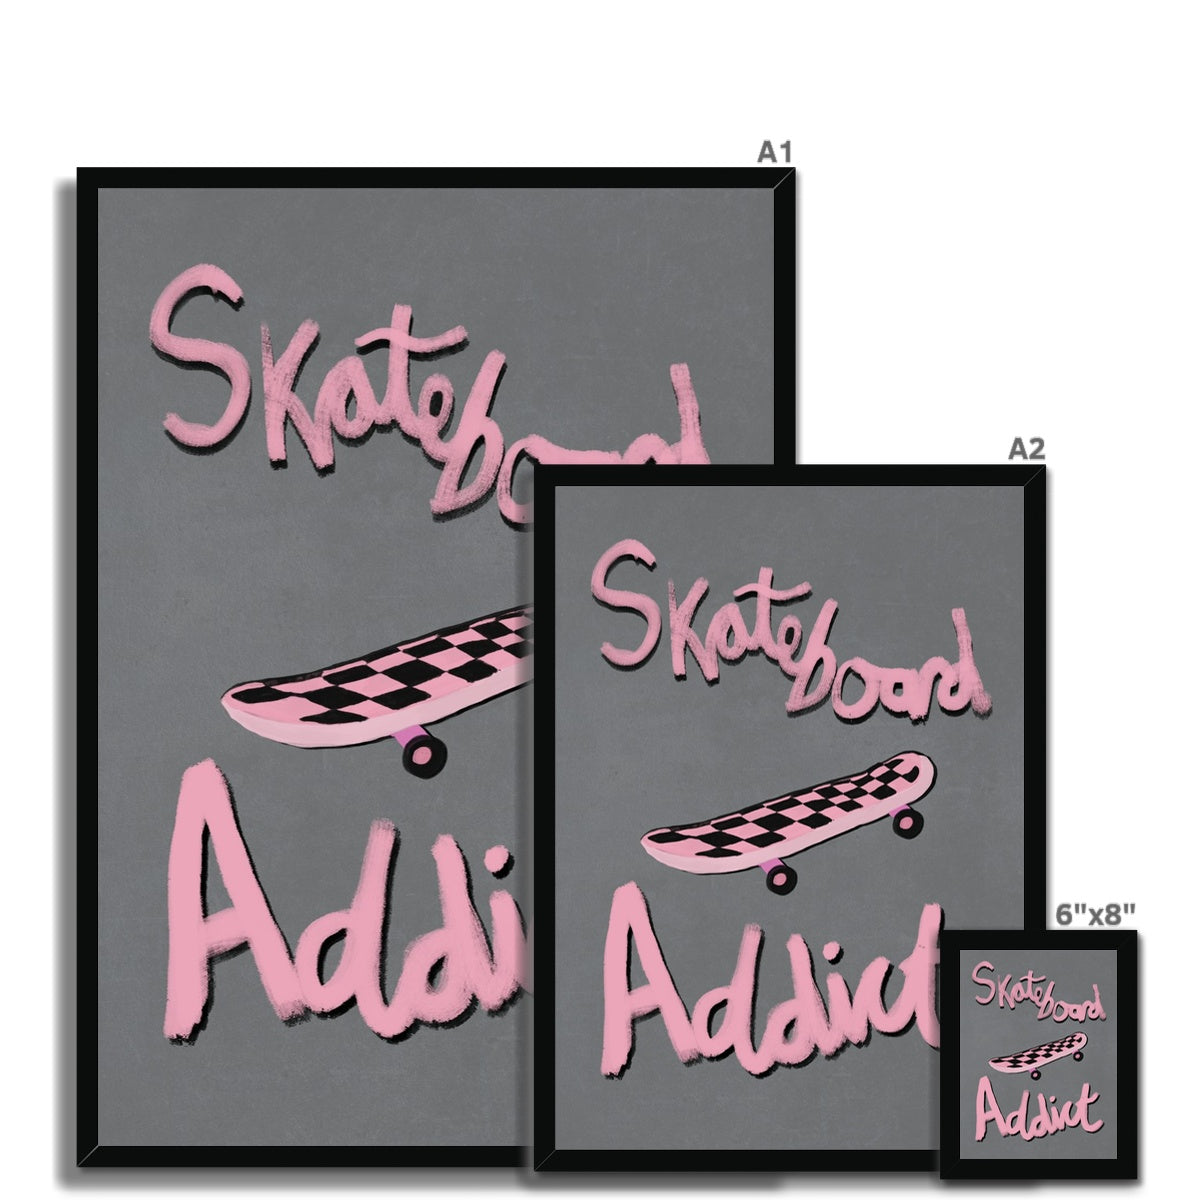 Skateboard Addict - Grey, Pink Framed Print